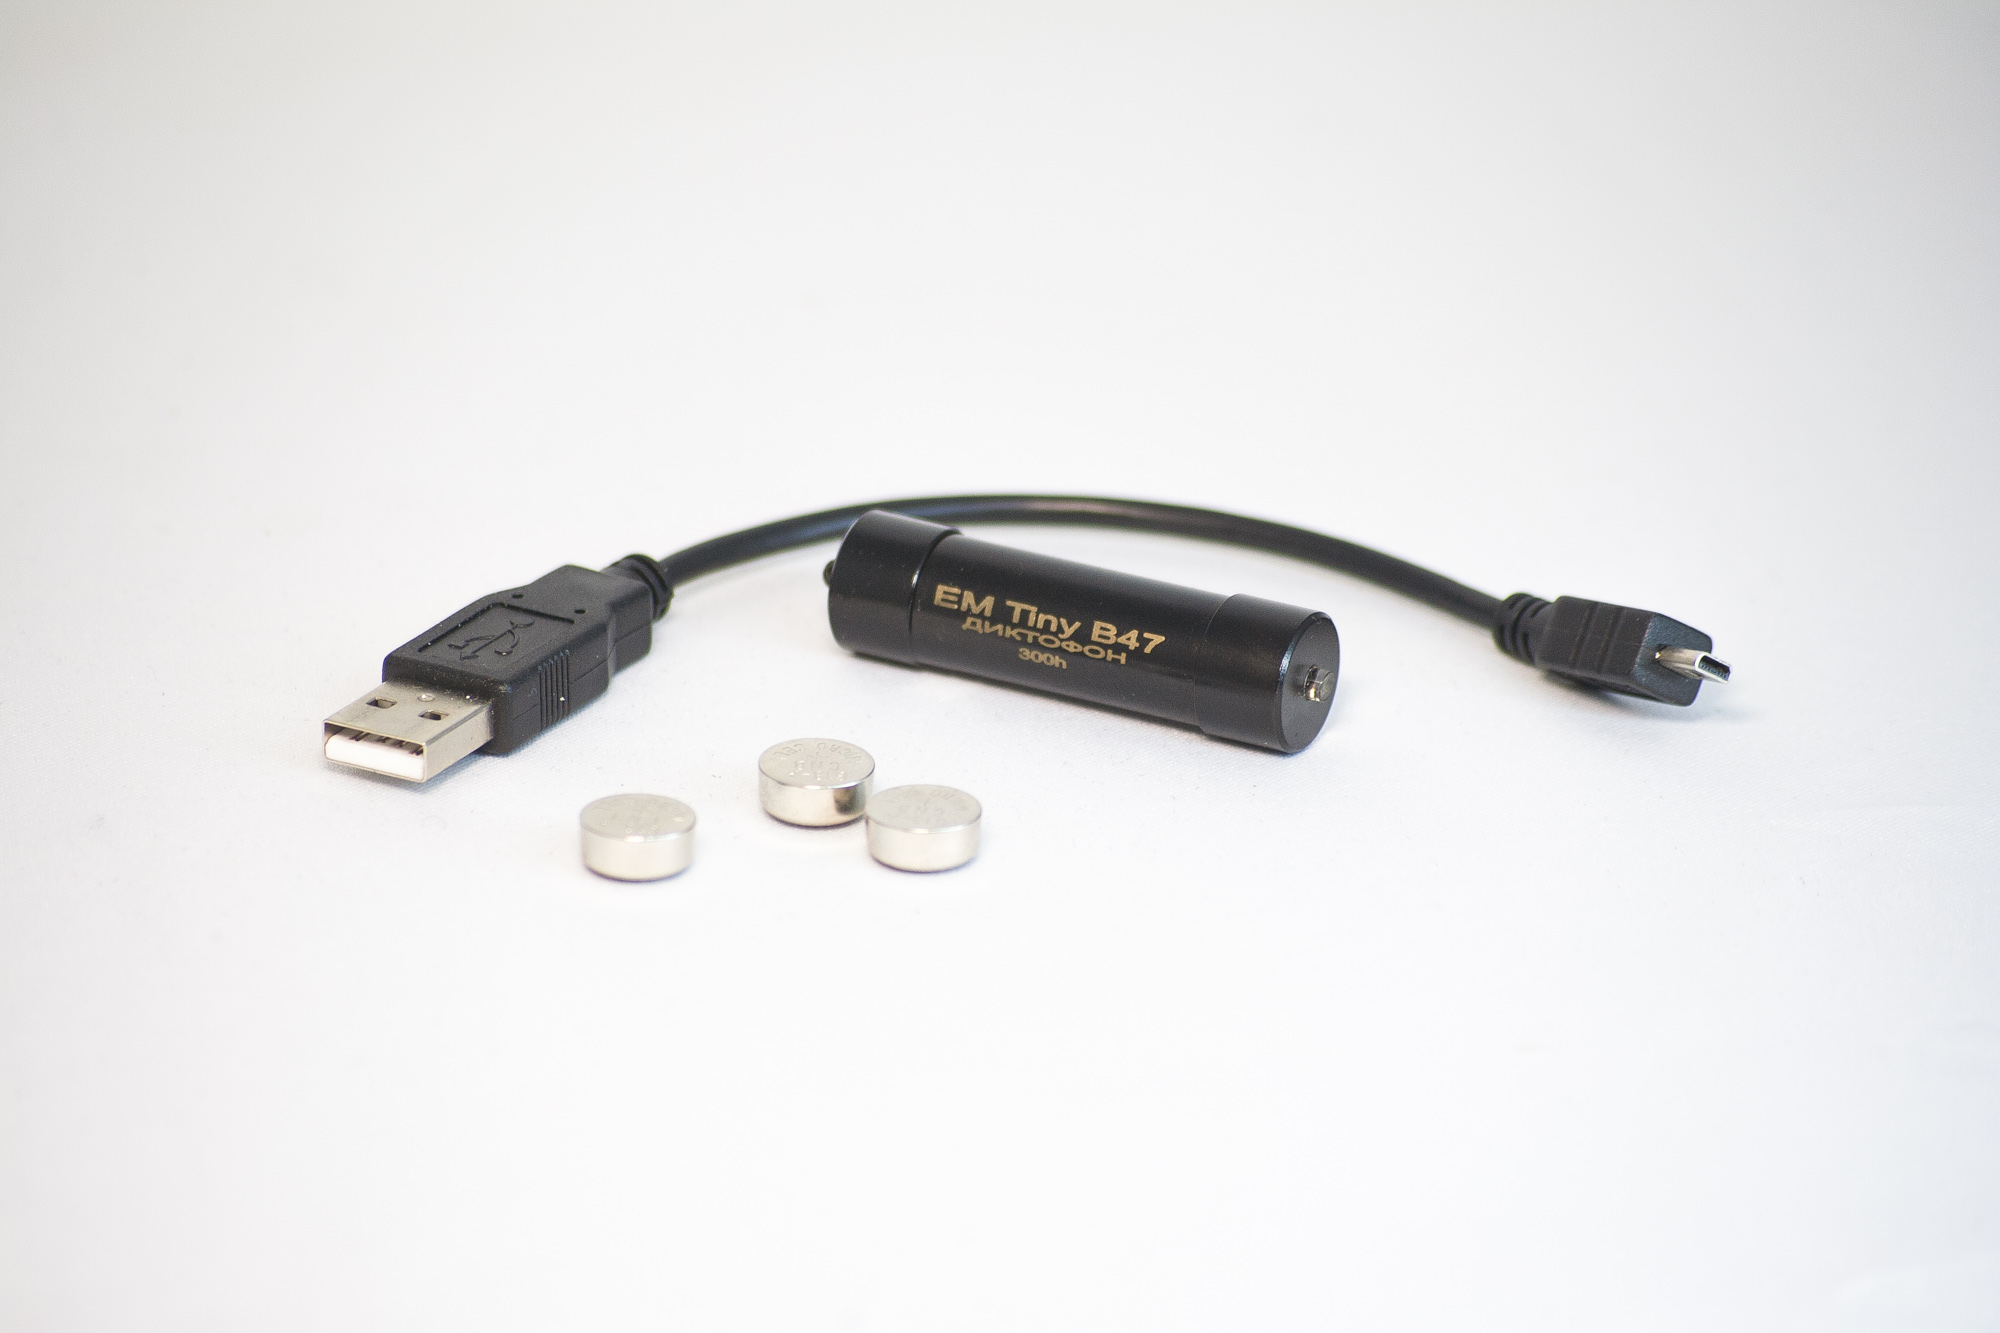 Все Телесистемы EM Tiny В47-300h (металл, размер d15*50мм, вес 19г, автономность до 40ч, USB 1.1, батарейки) видеонаблюдения в магазине Vidos Group